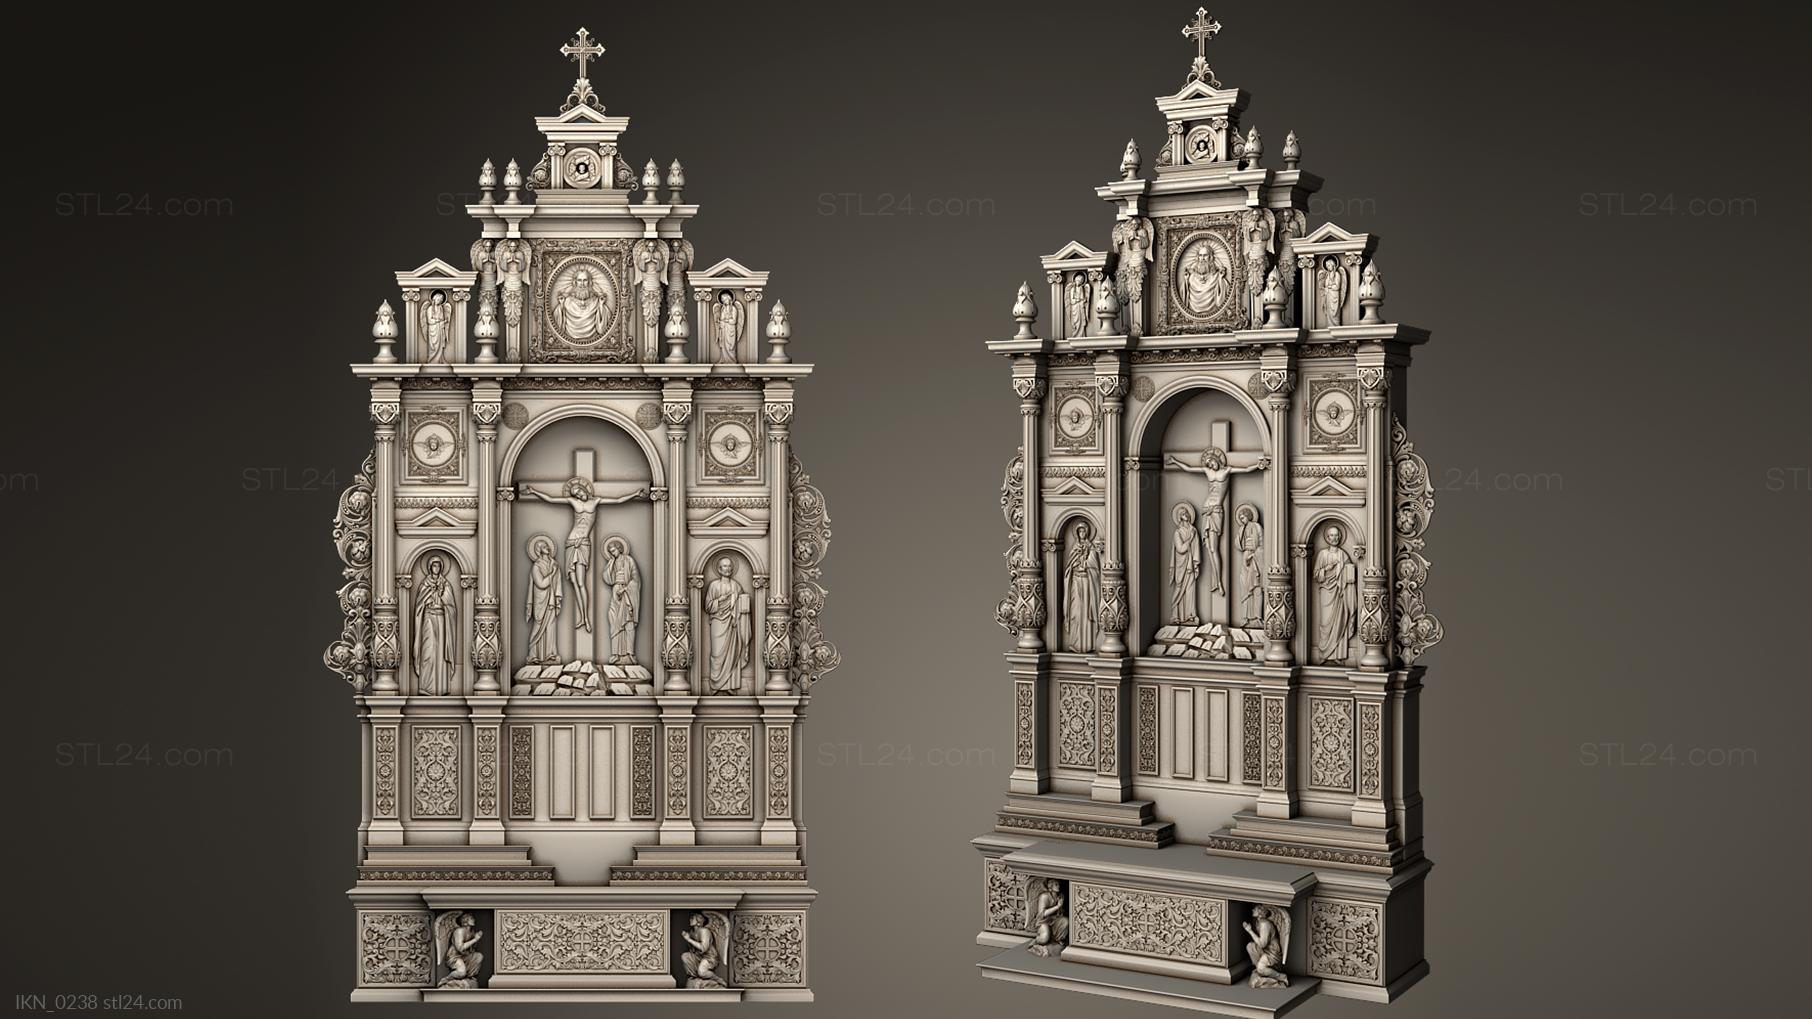 Иконостасы (Католический иконостас, IKN_0238) 3D модель для ЧПУ станка